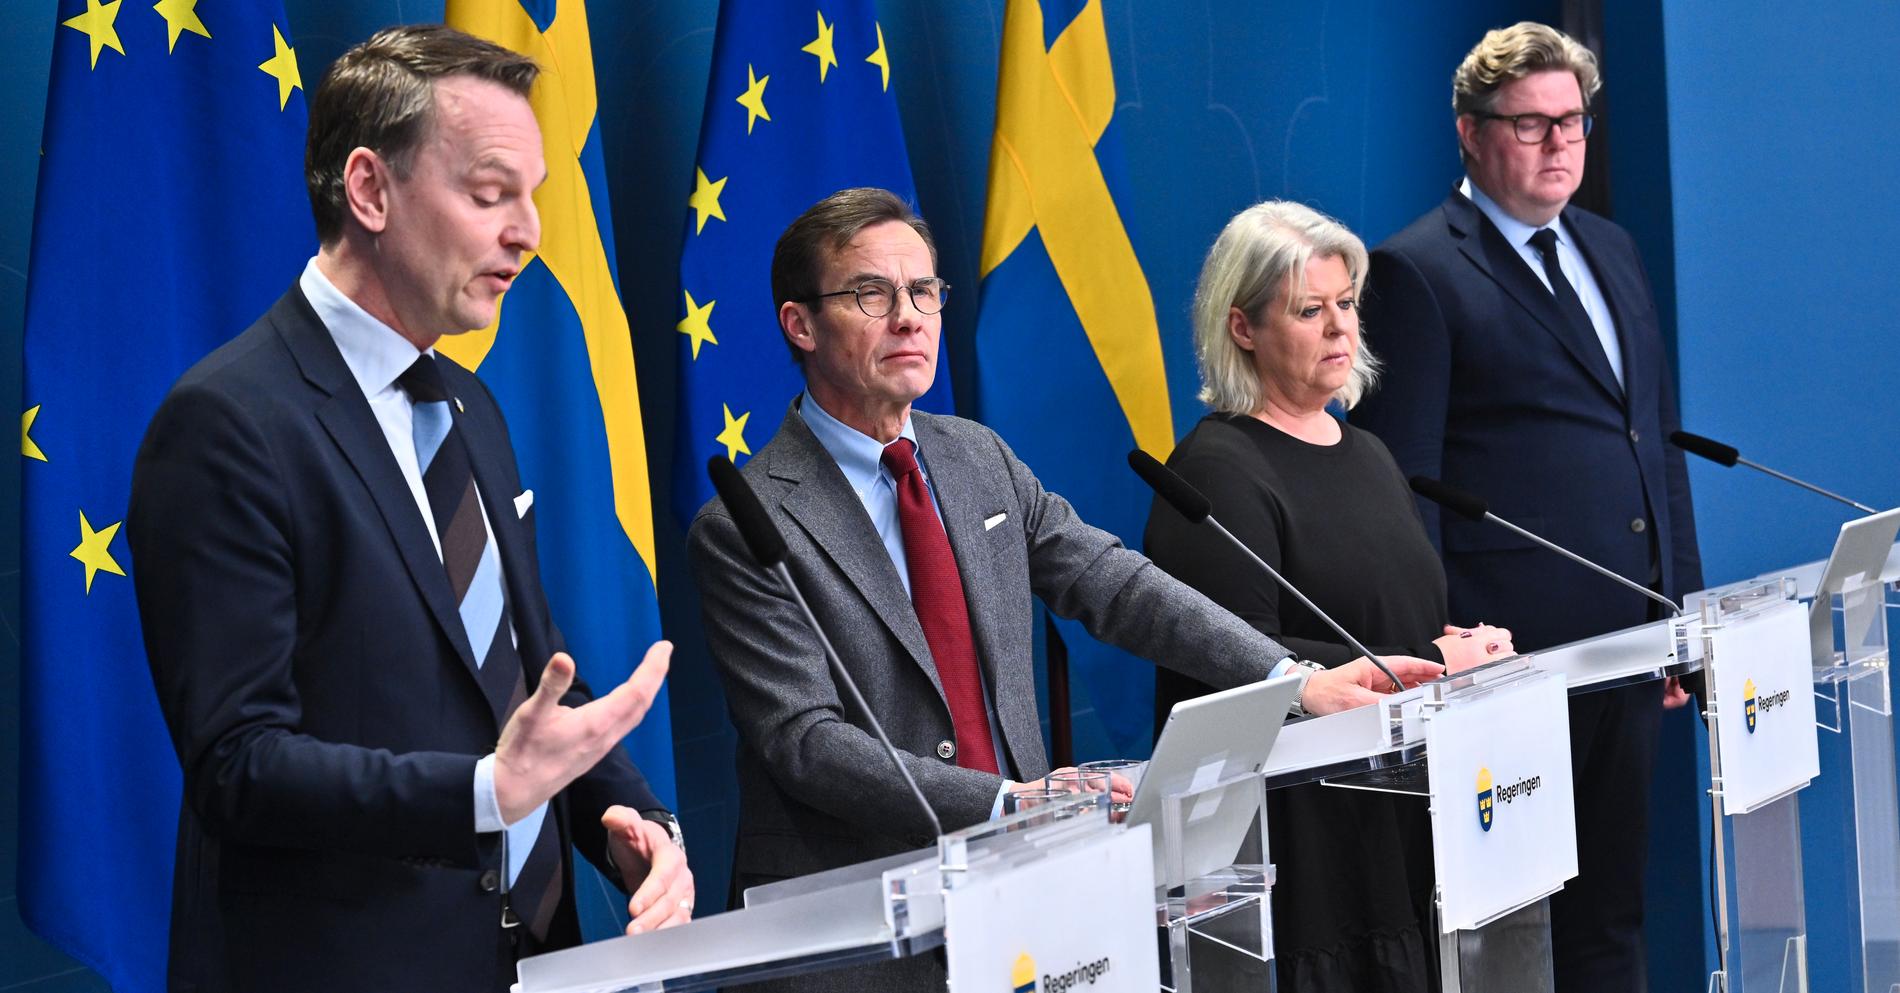 Från höger: SKR:s ordförande Peter Danielsson, statsminister Ulf Kristersson (M), socialtjänstminister Camilla Waltersson Grönvall (M) och justitieminister Gunnar Strömmer (M).